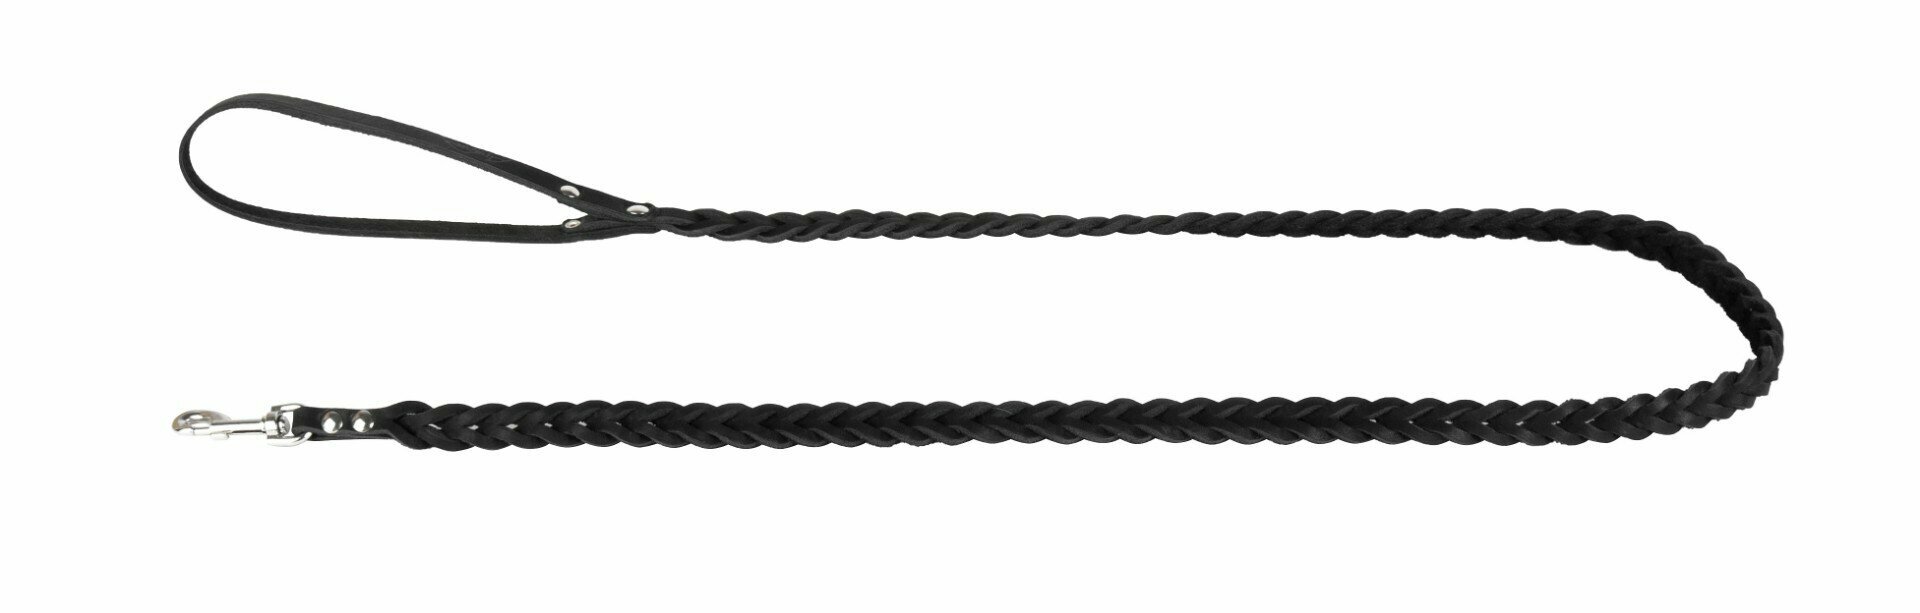 Поводок аркон кожаный 1.2м х 12мм плетение "Косичка", цвет черный